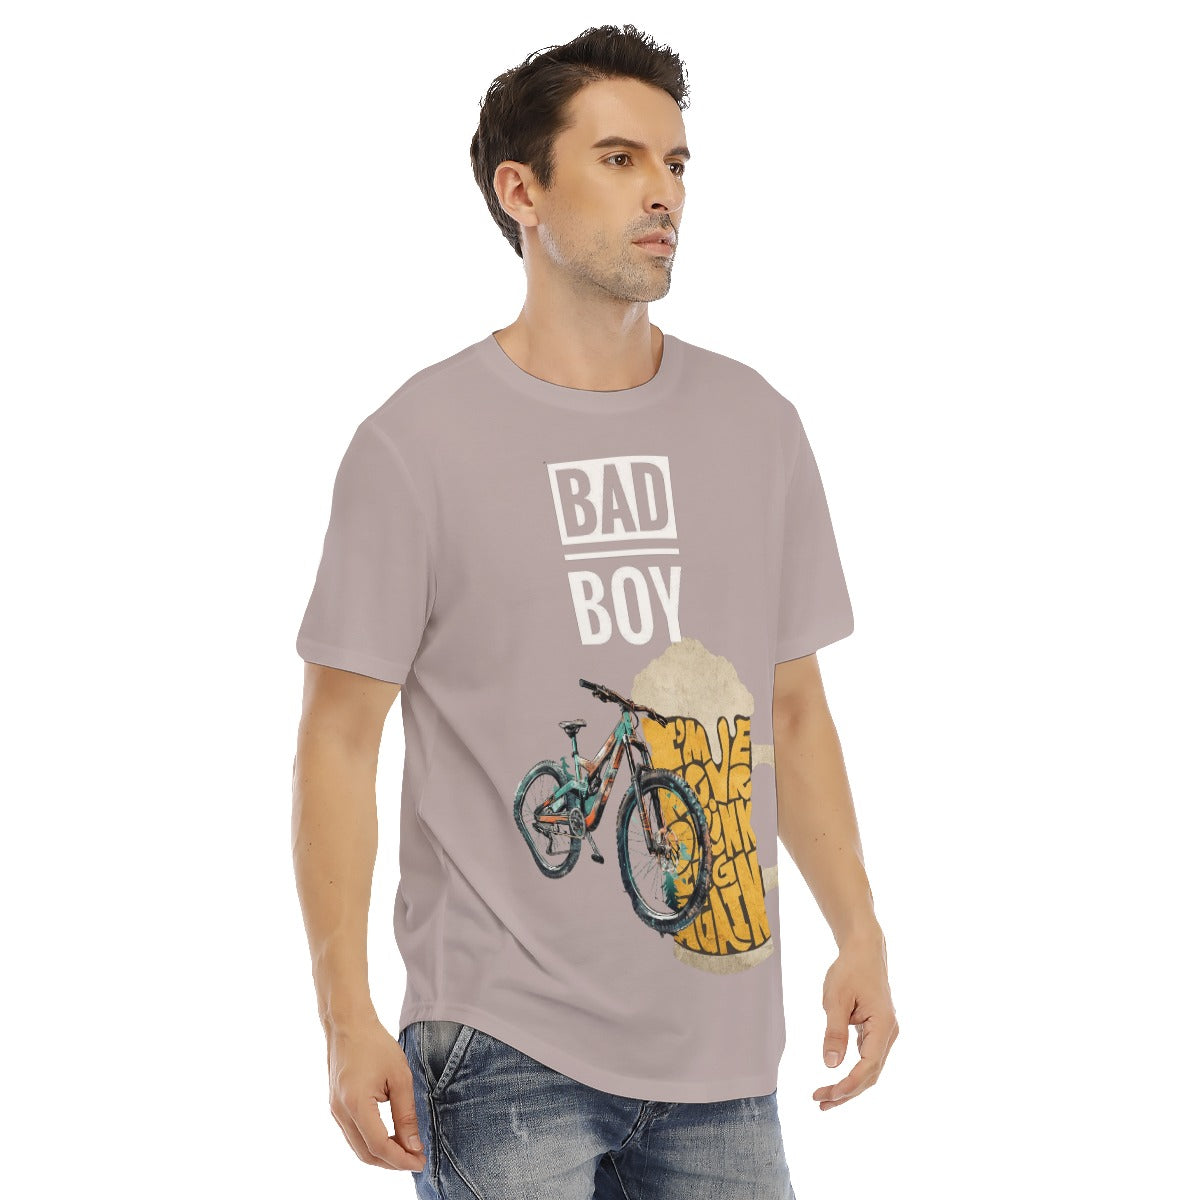 All-Over Print Men's Short Sleeve Rounded Hem T-shirt